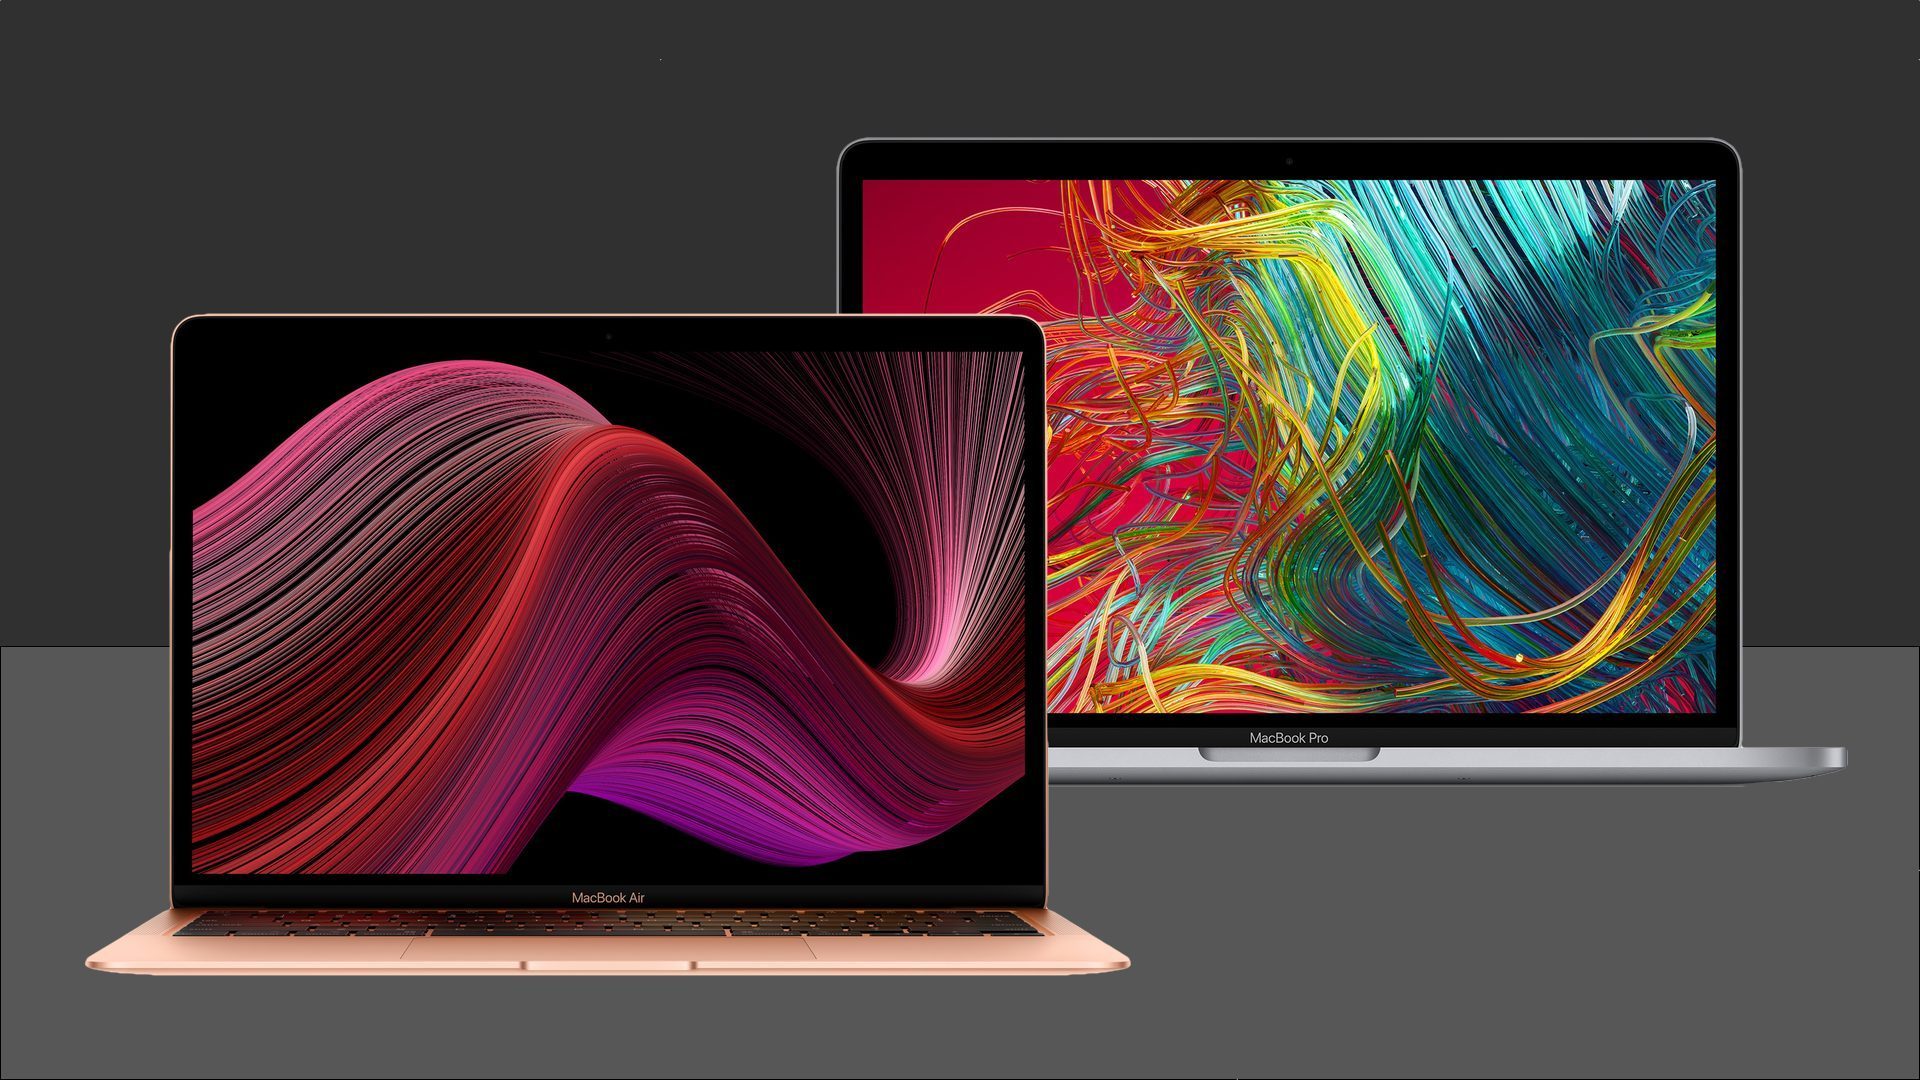 MacBook-Air-2020-vs-MacBook-Pro-2020.jpg - 294,80 kB